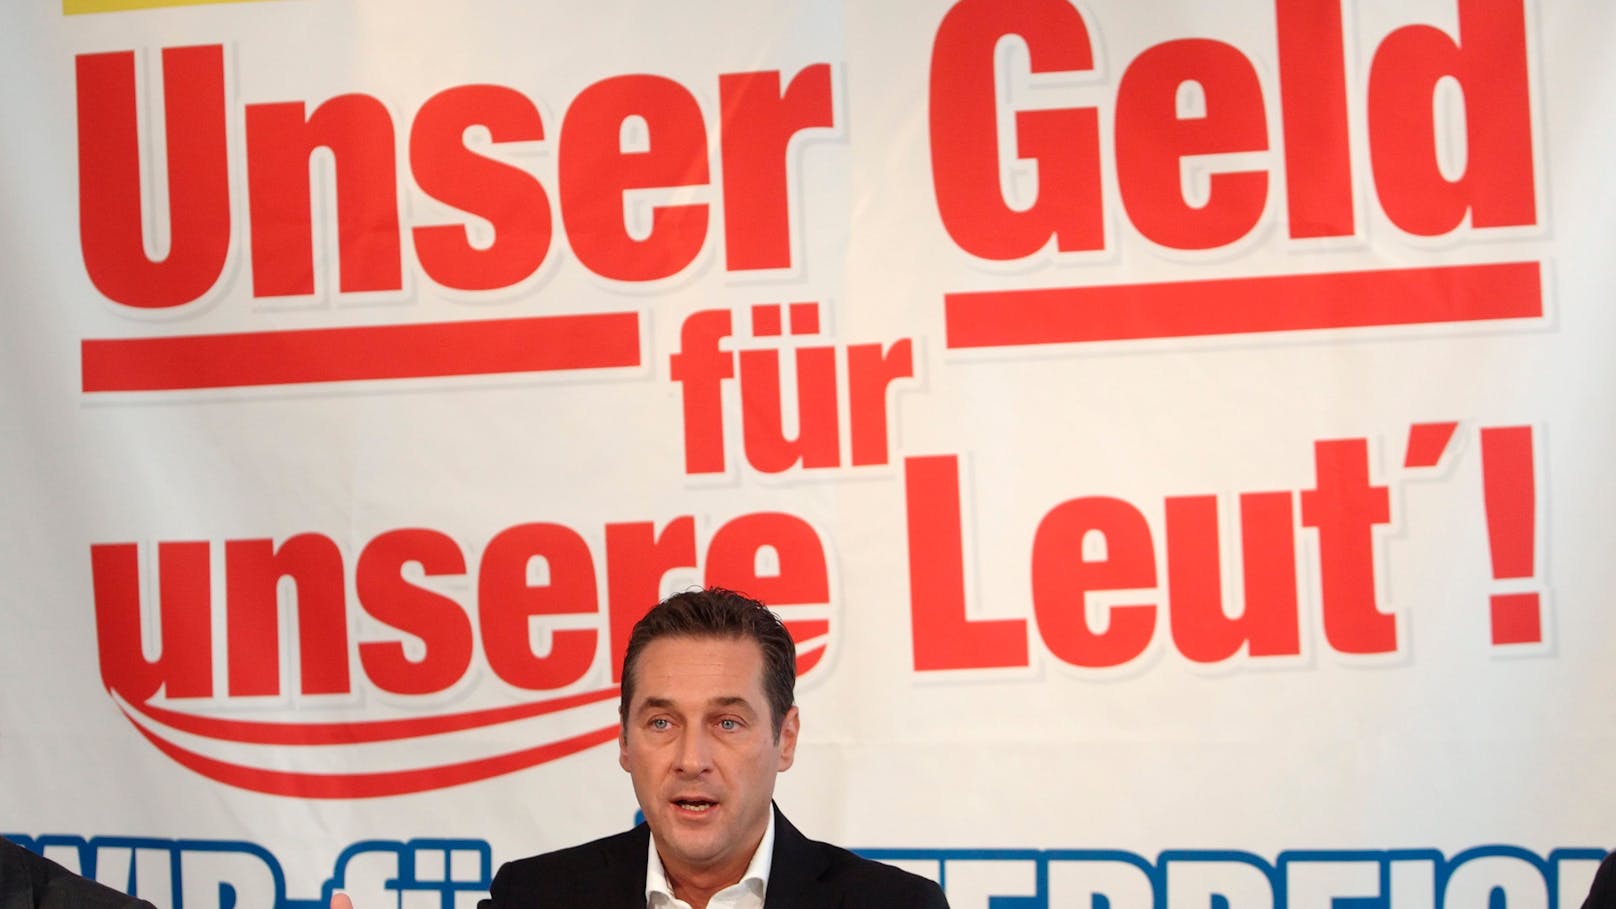 SPÖ auf den Spuren von Heinz-Christian Strache: "Unser Geld für unsere Leut'!"